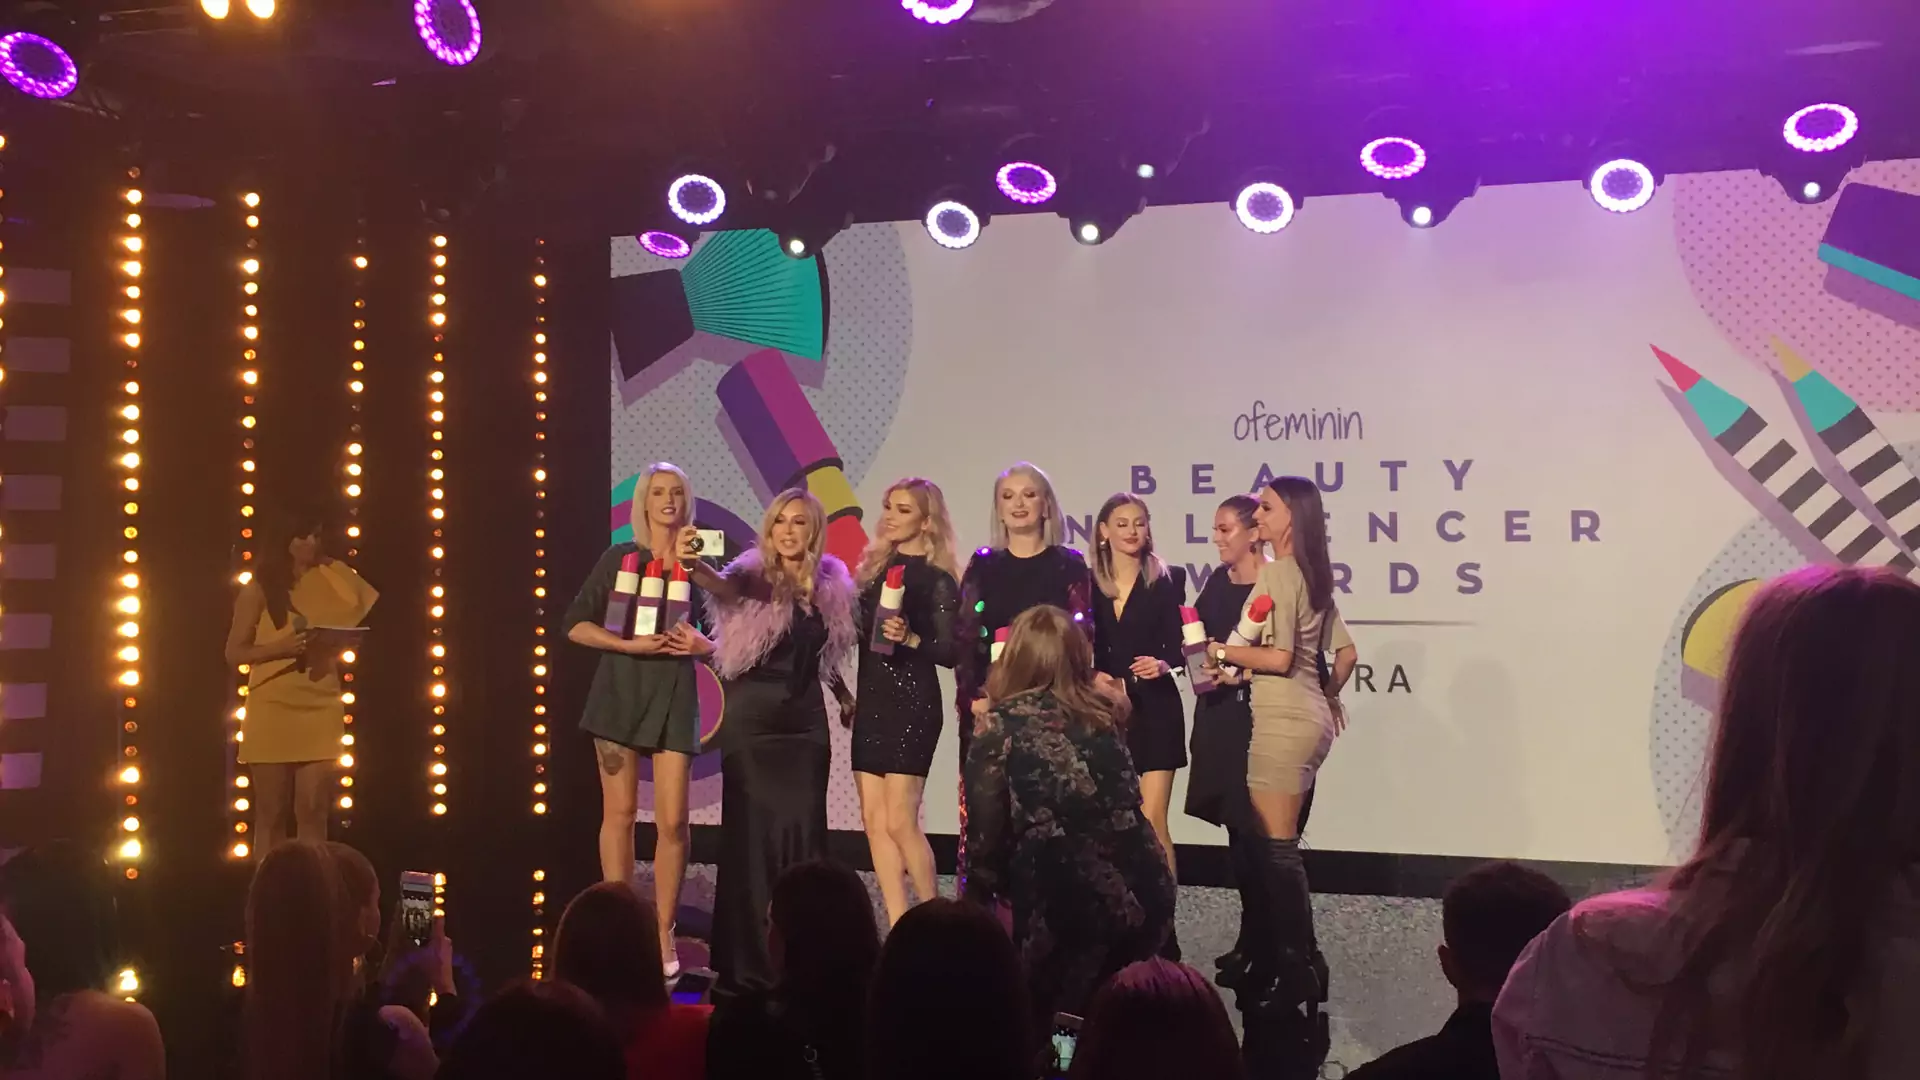 Poznaj laureatki Beauty Influencer Awards powered by Sephora - to one zgarnęły nagrody podczas gali!